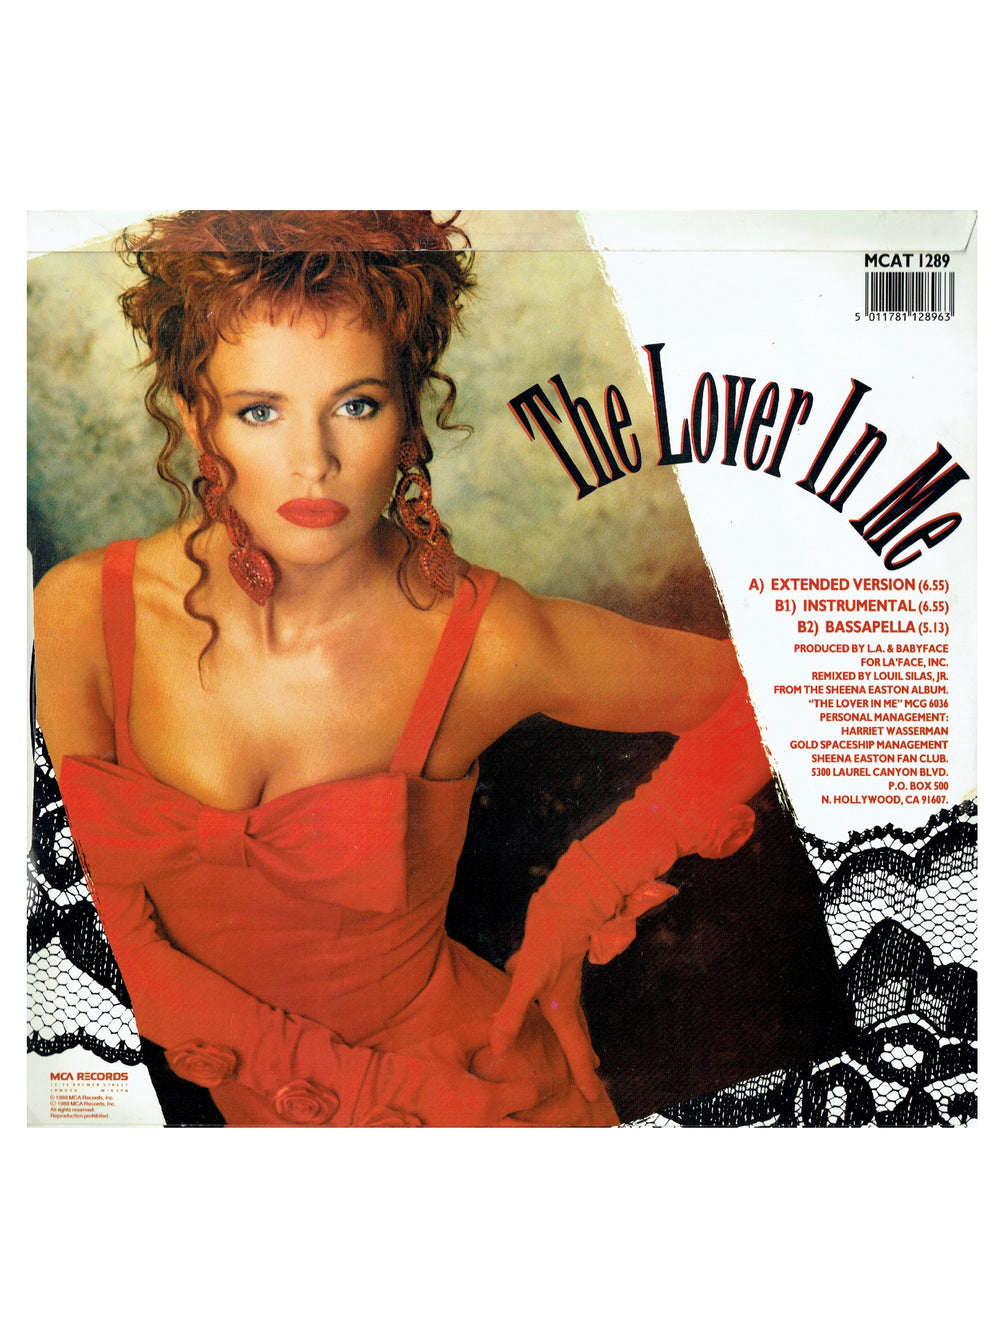 Prince – Sheena Easton The Lover In Me Vinyl 12" UK Preloved: 1988